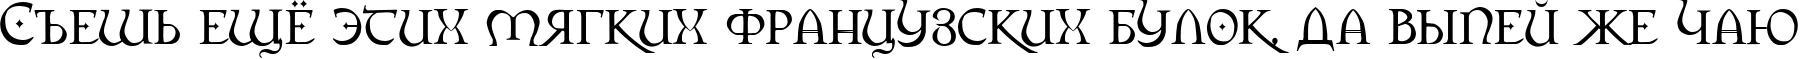 Пример написания шрифтом Orpheus текста на русском